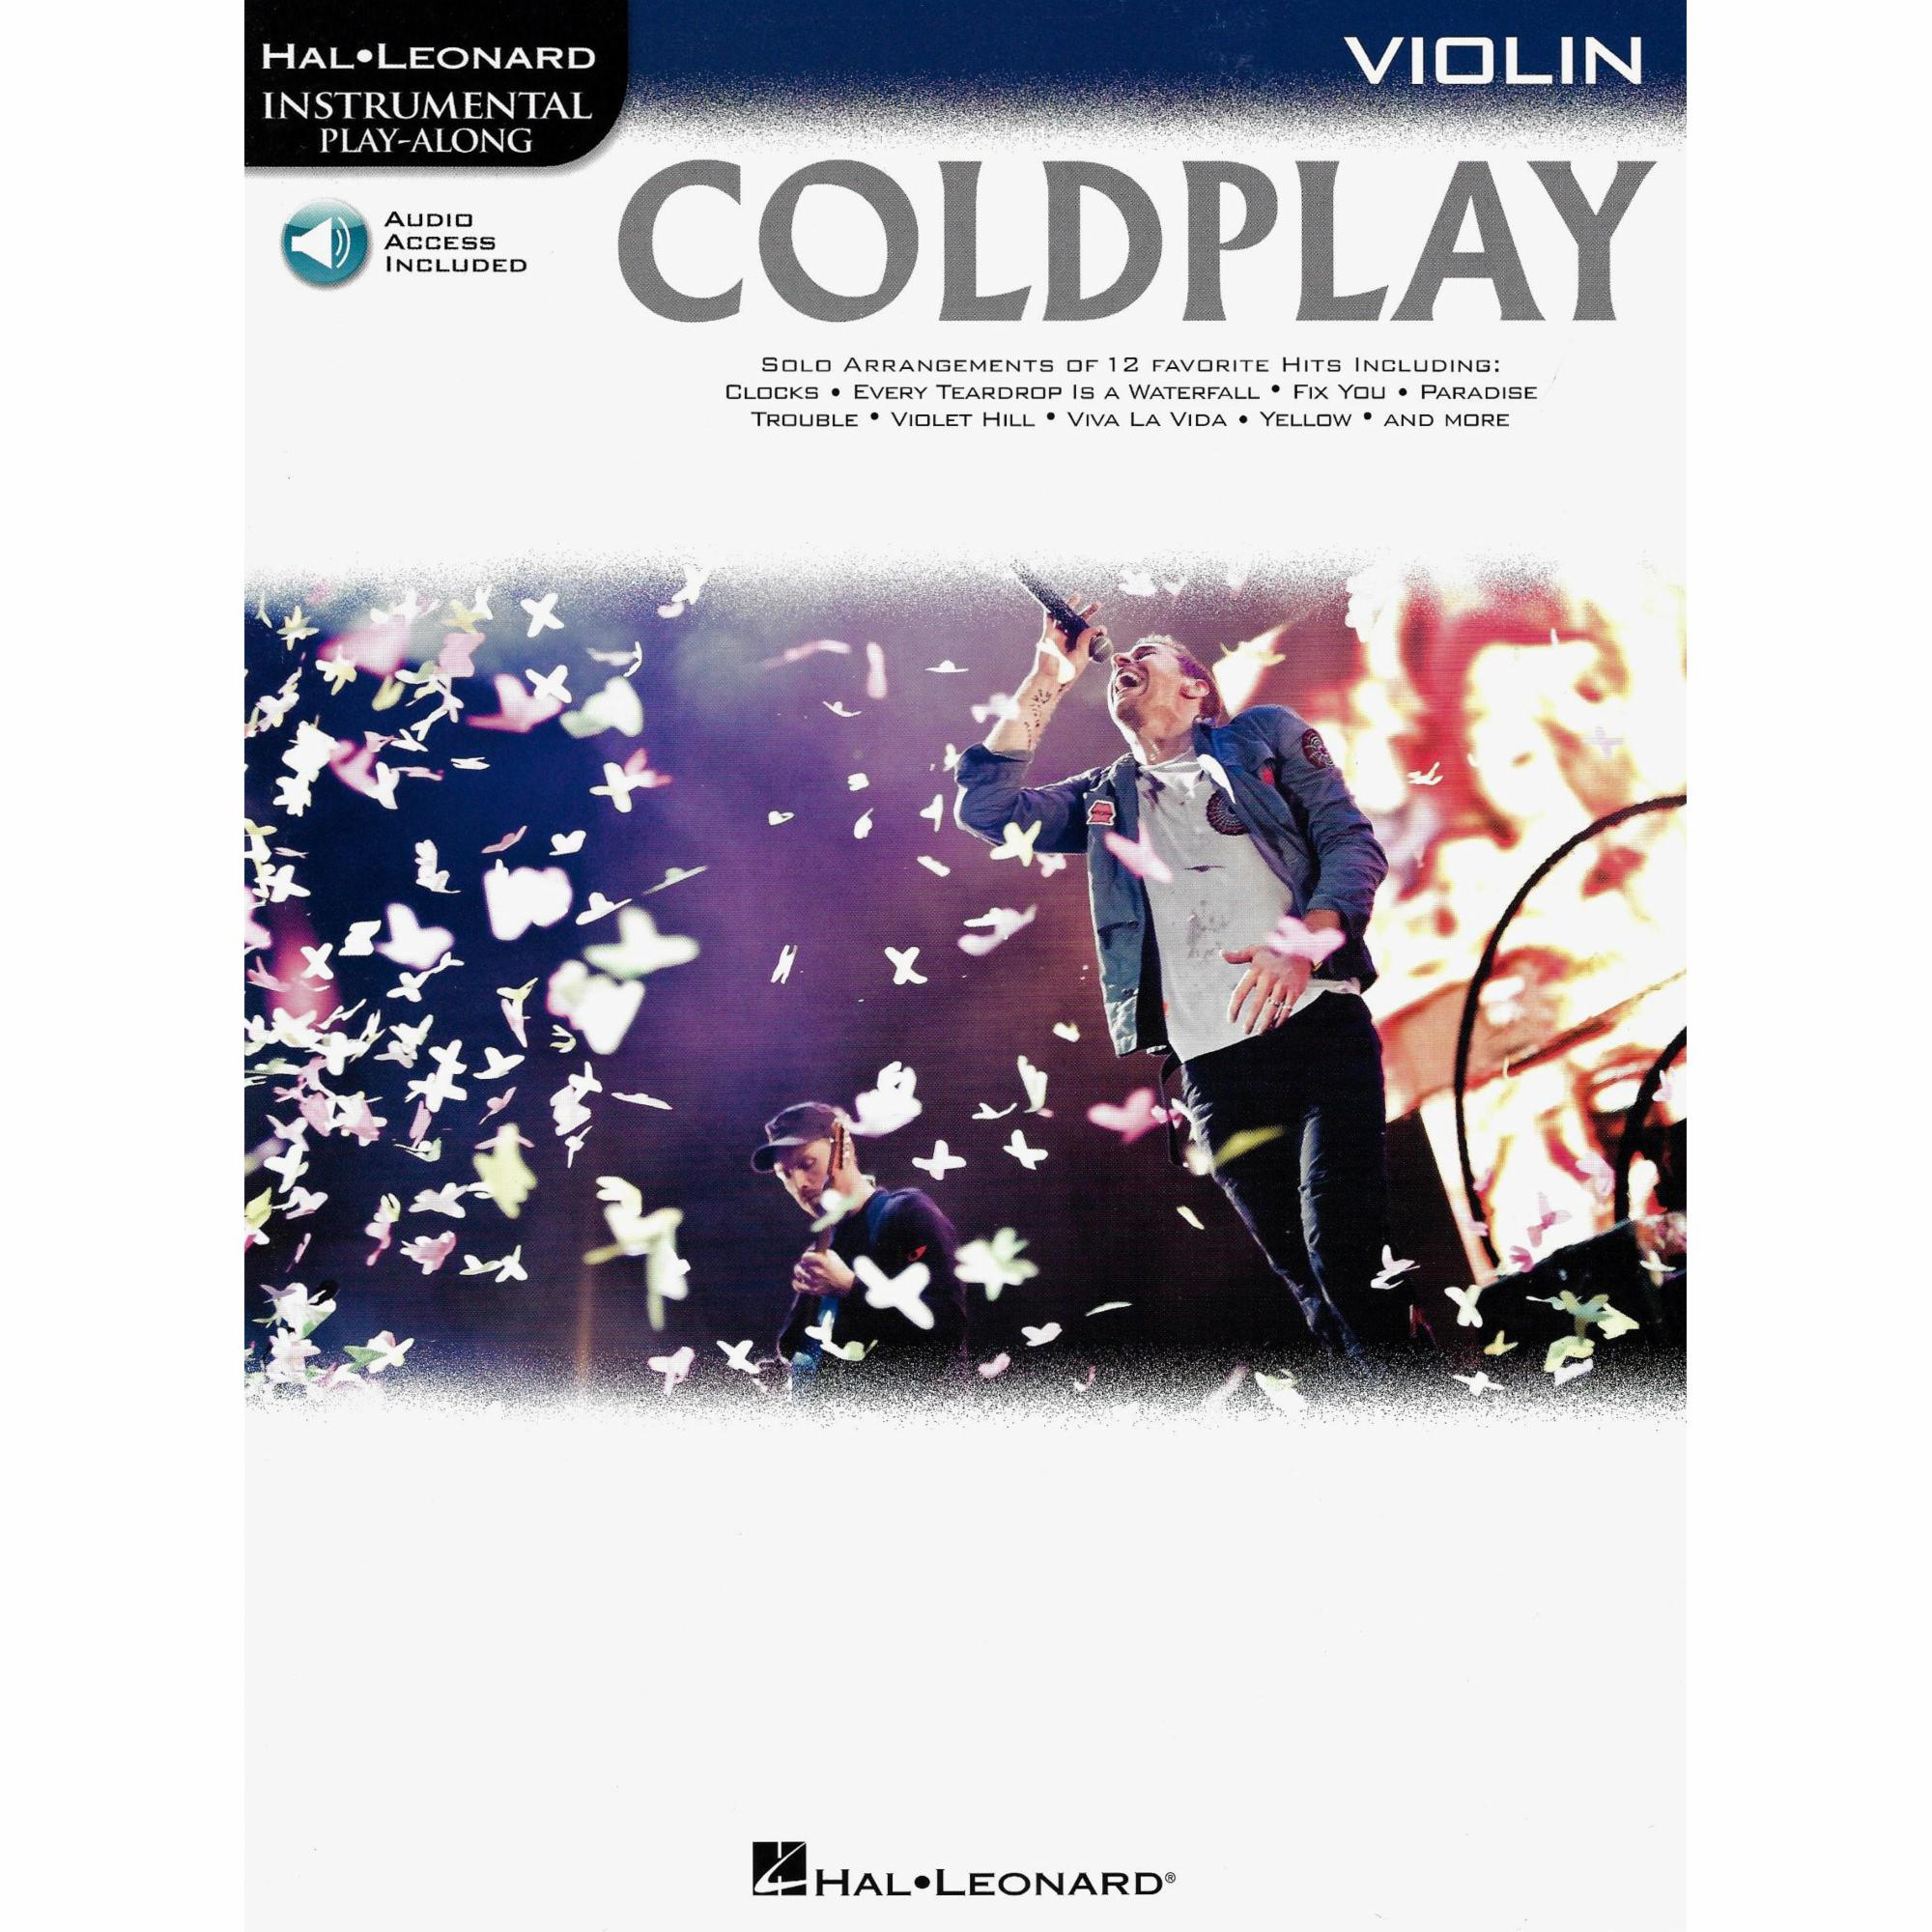 Coldplay for Violin, Viola, or Cello